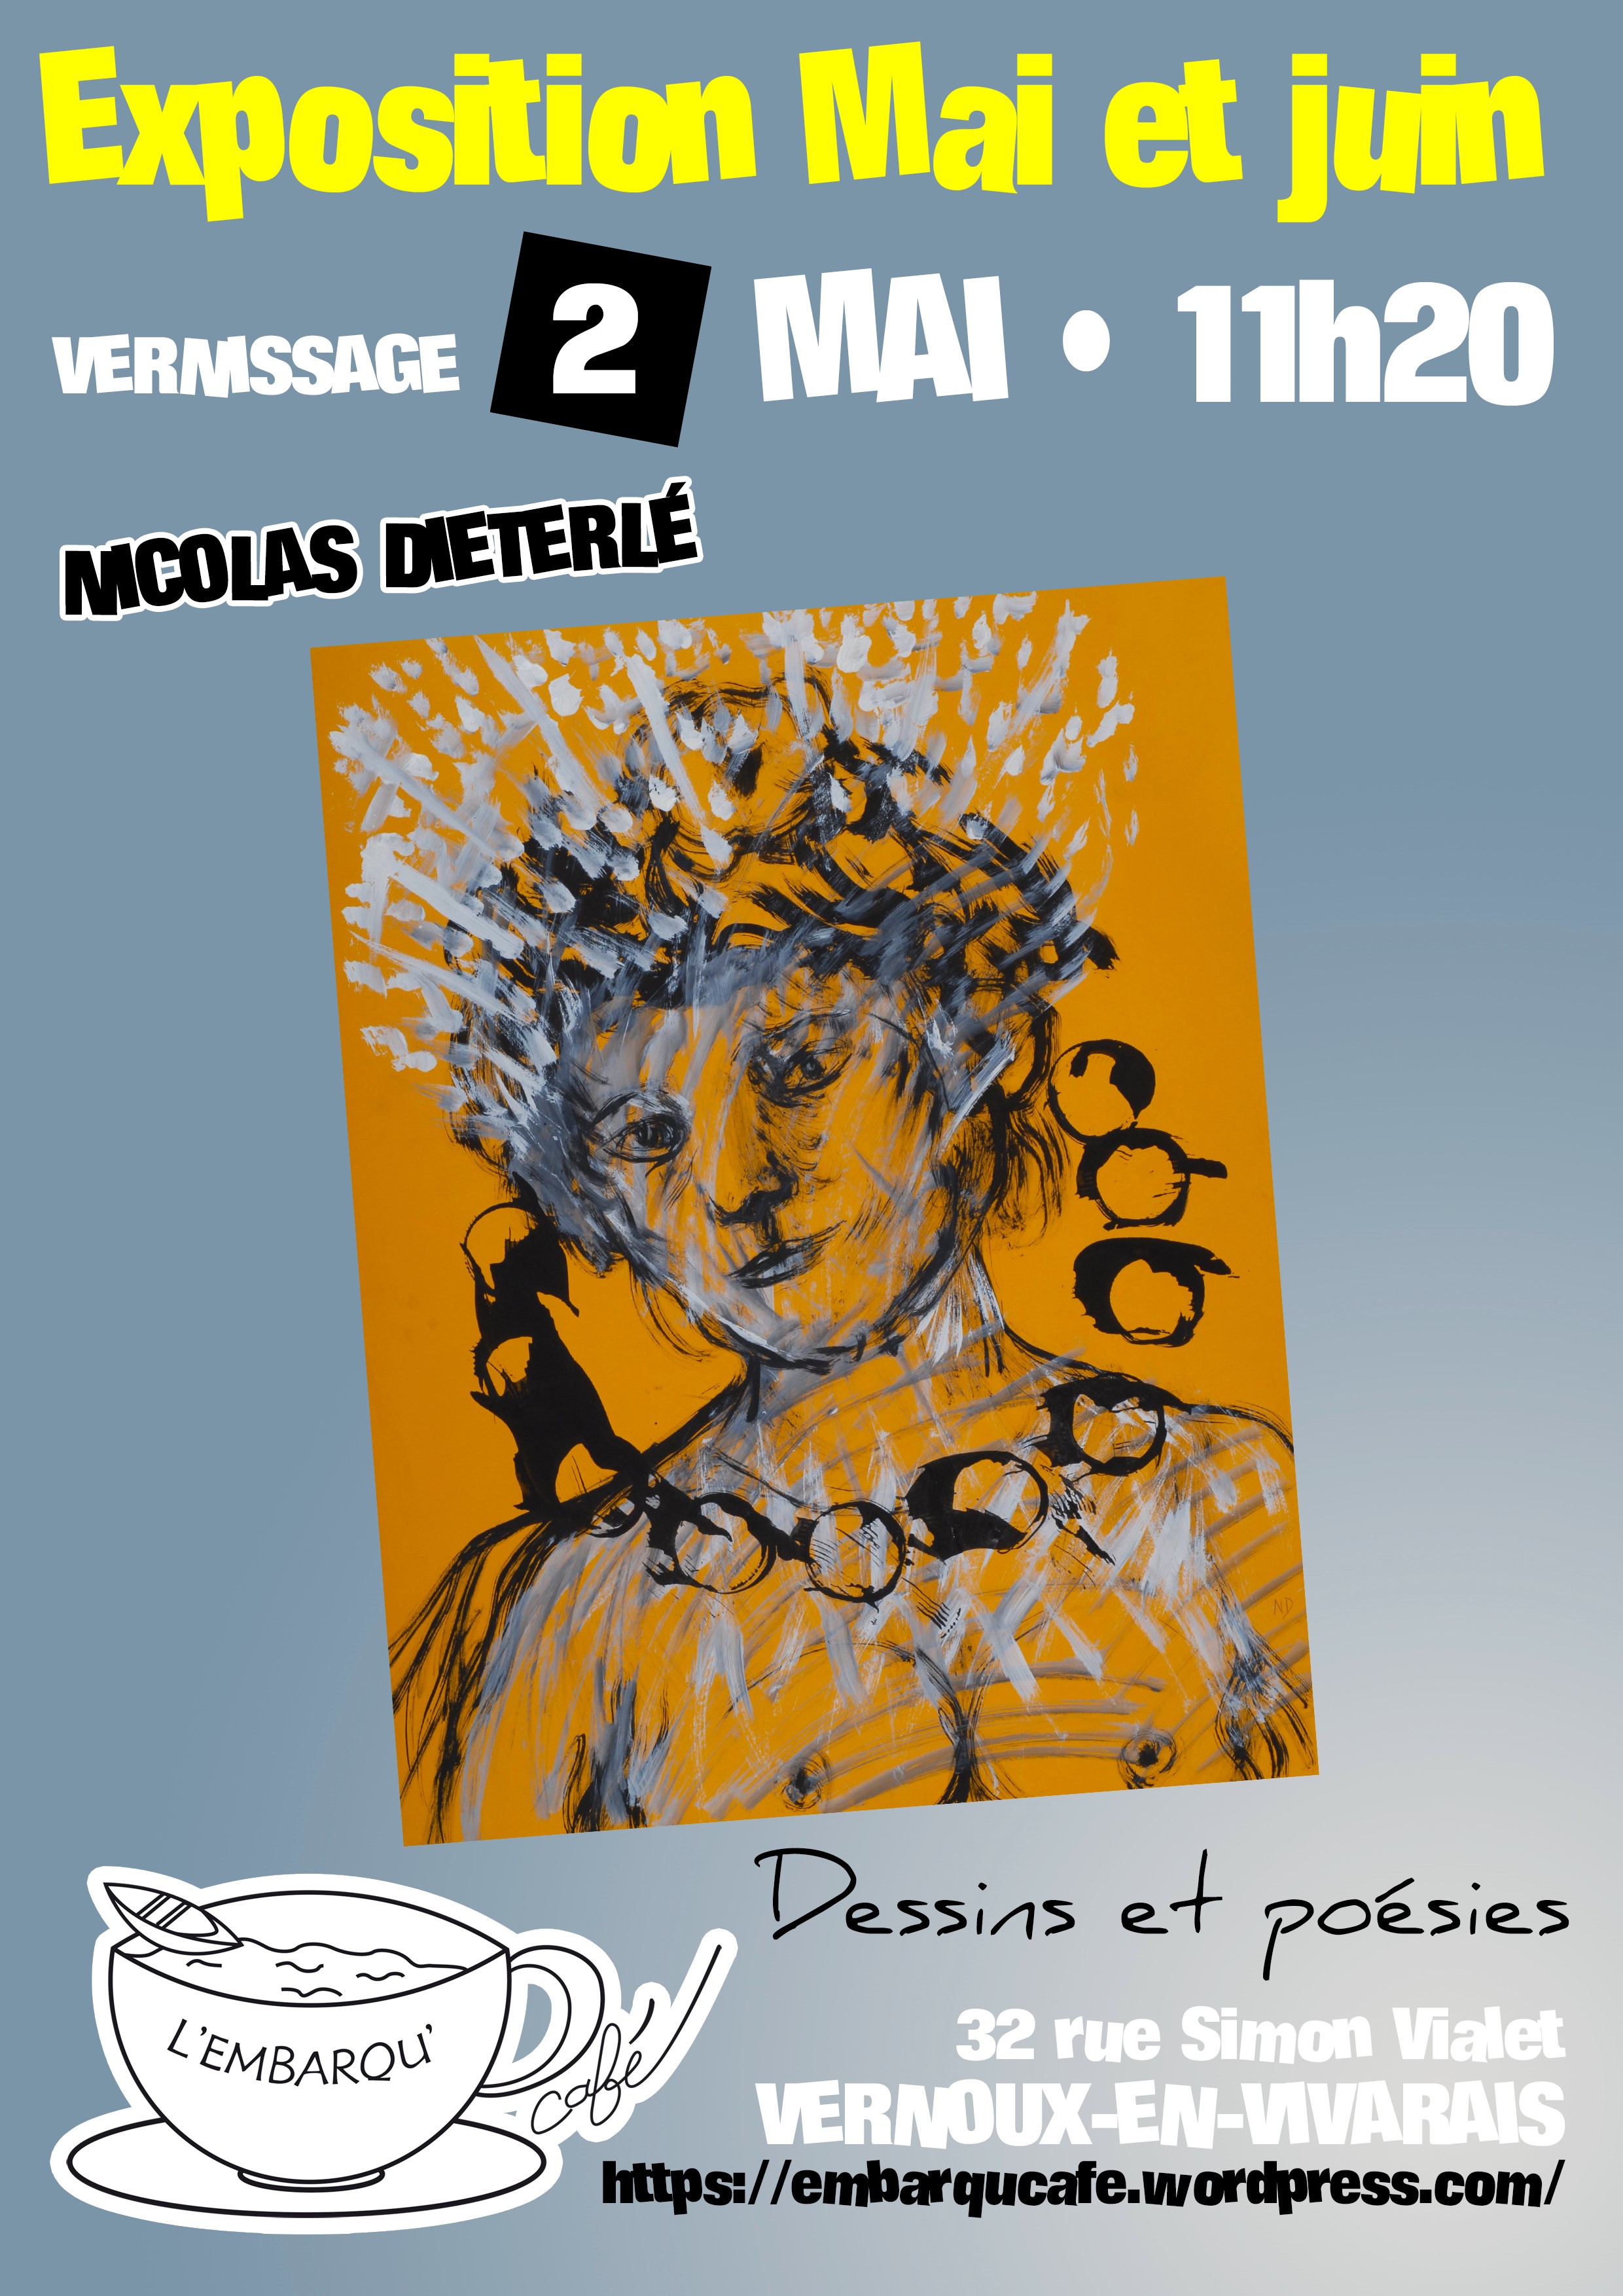 Alle leuke evenementen! : Exposition de dessins et poésies de Nicolas Dieterlé